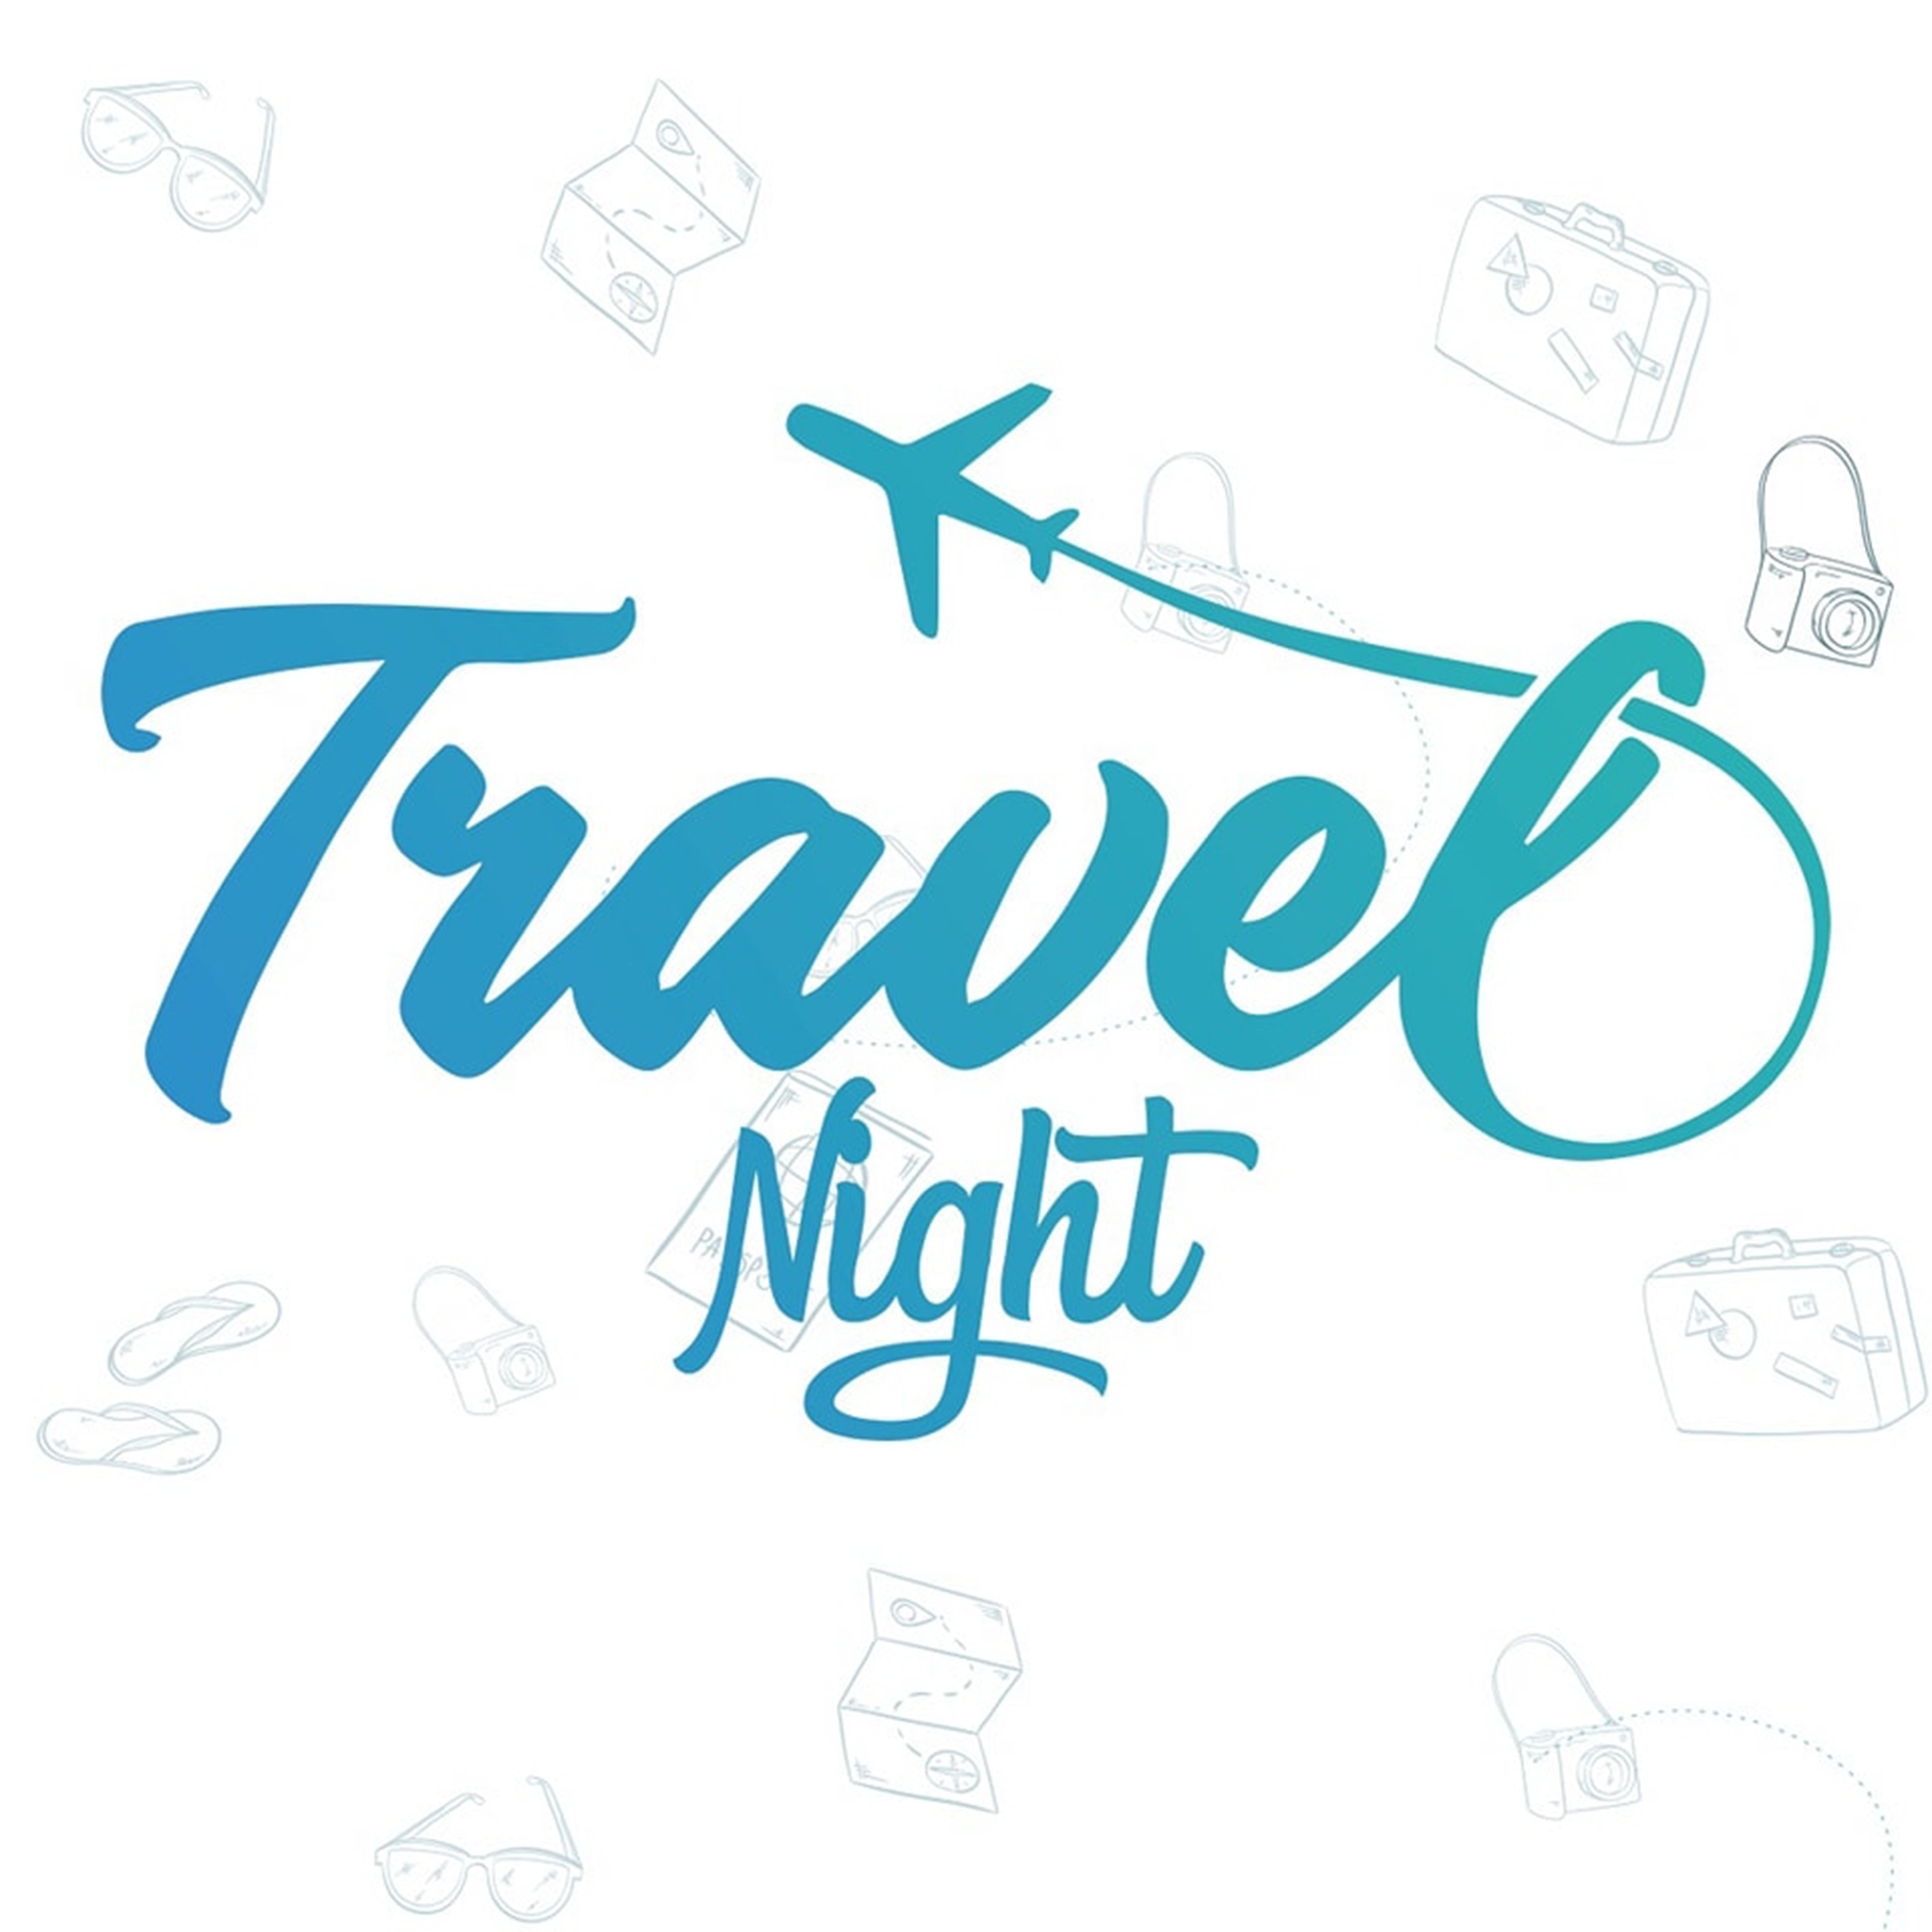 Travel Night – Travel marketing agency